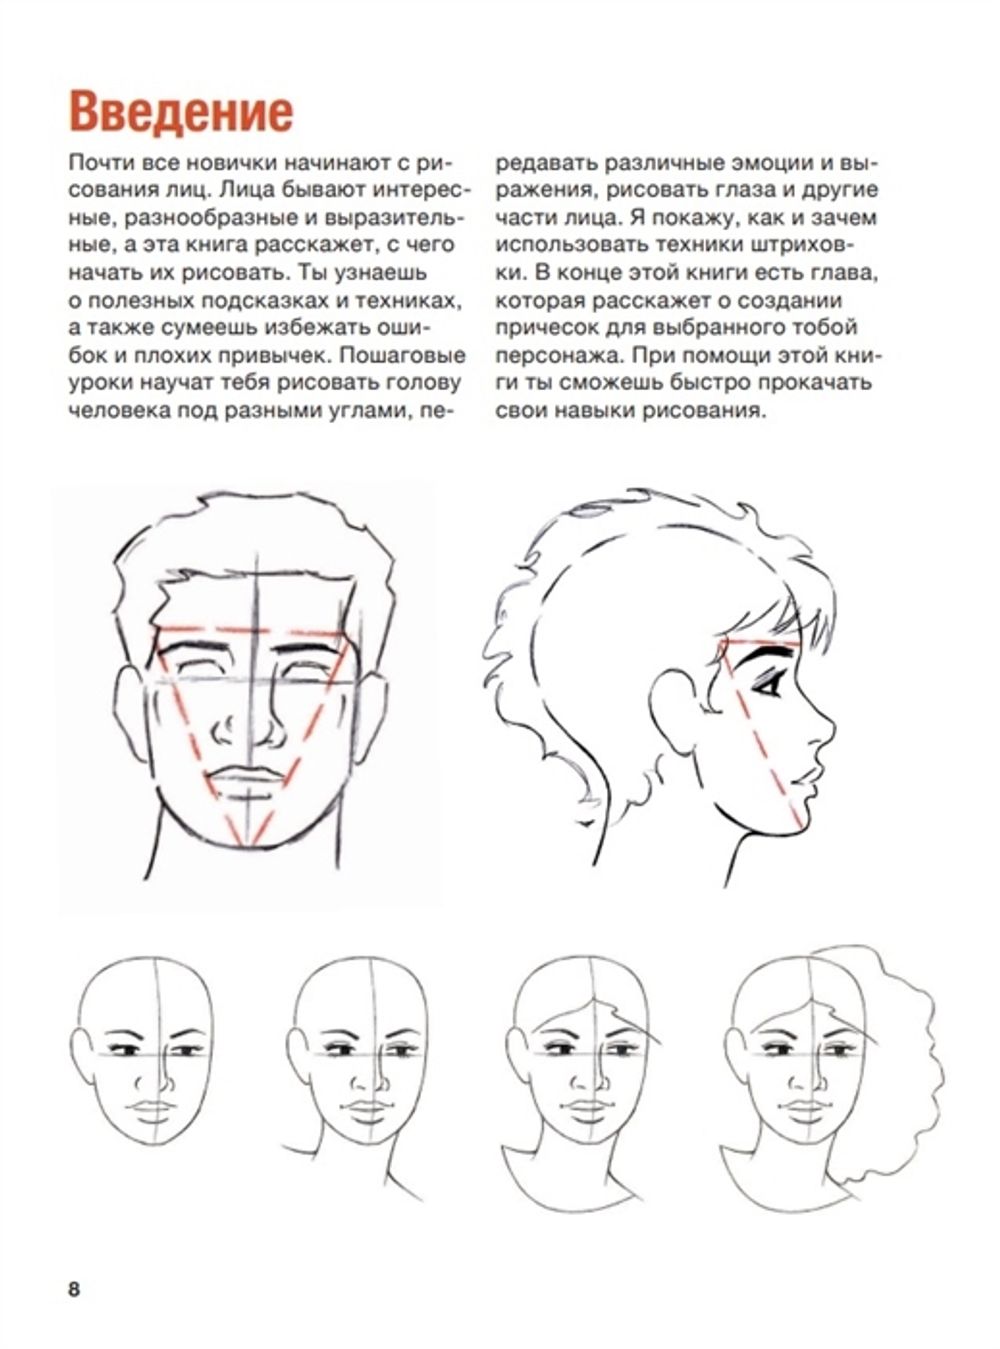 Как рисовать голову с разных ракурсов и создавать максимально реалистичные портреты